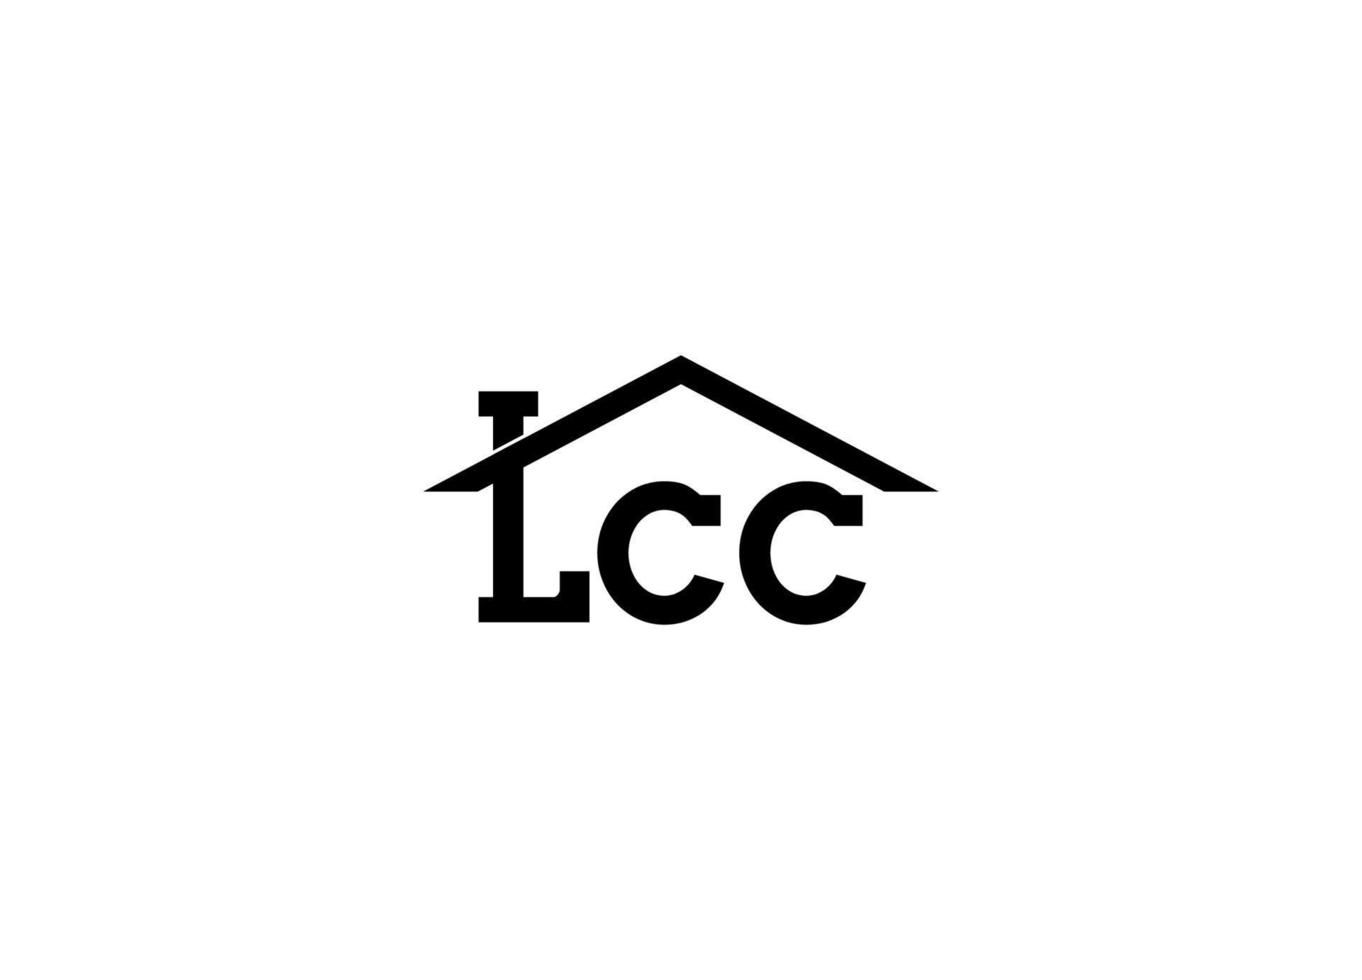 Lcc modern real estate logo design vector icon template